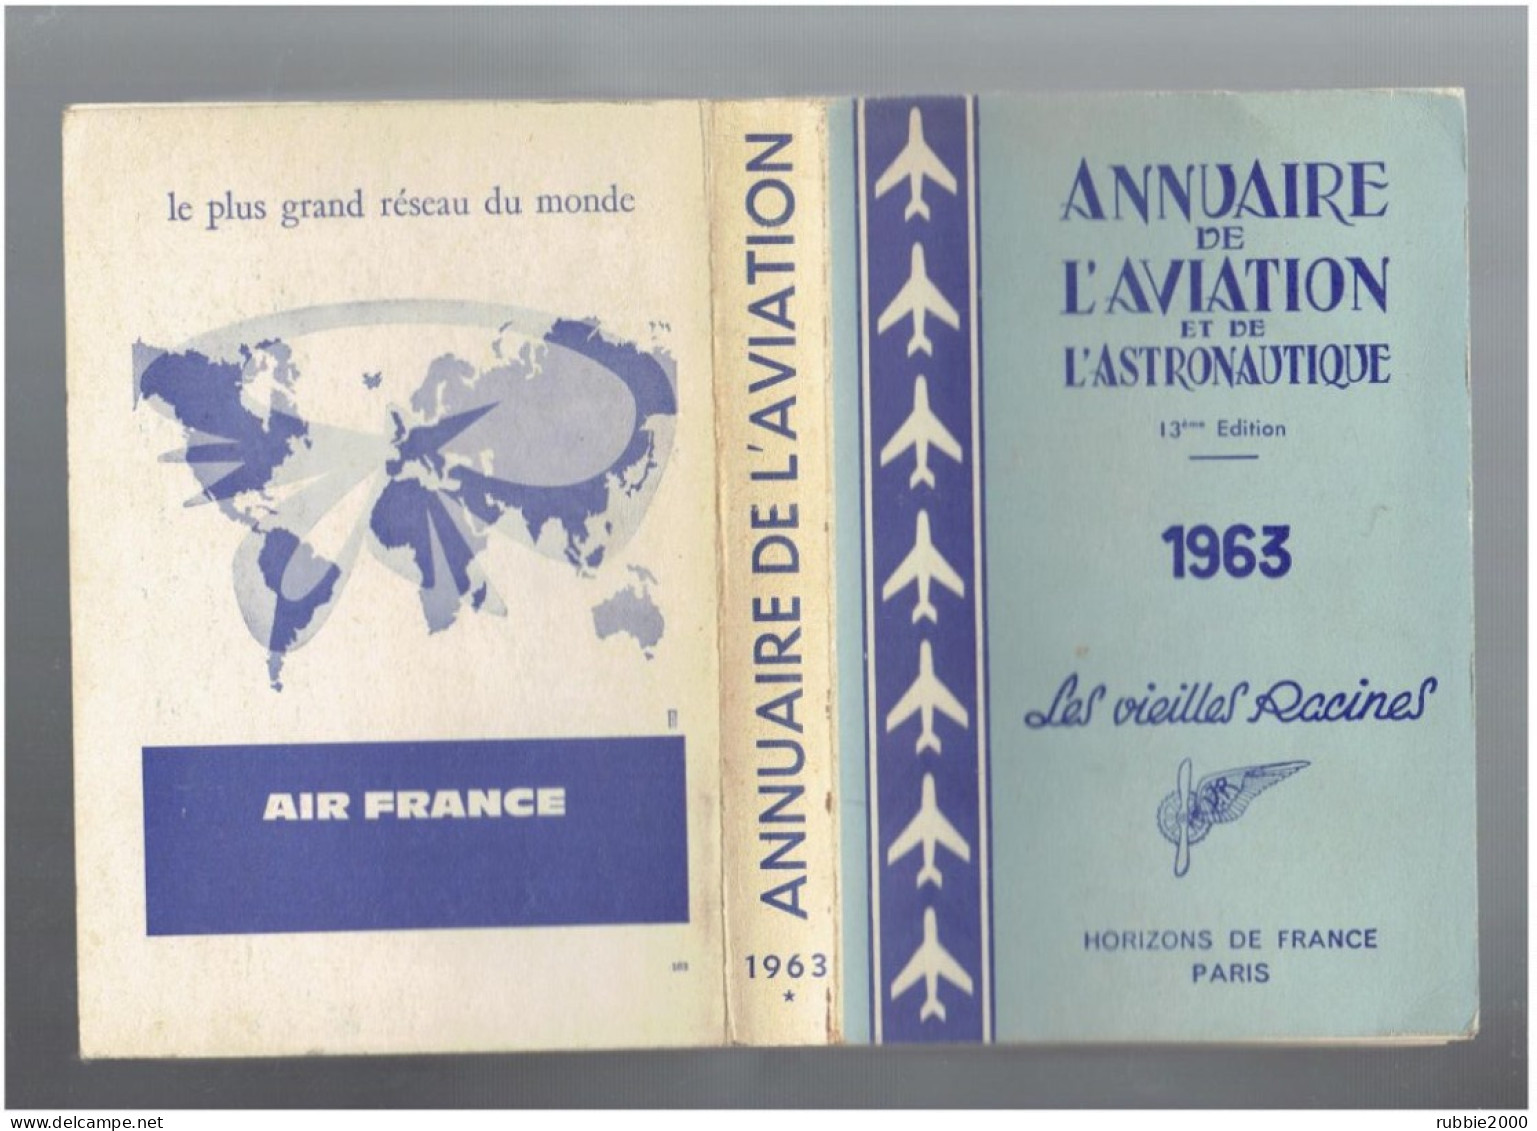 1963 ANNUAIRE DE L AVIATION ET DE L ASTRONAUTIQUE LES VIEILLES RACINES HORIZONS DE FRANCE AVION - Flugzeuge